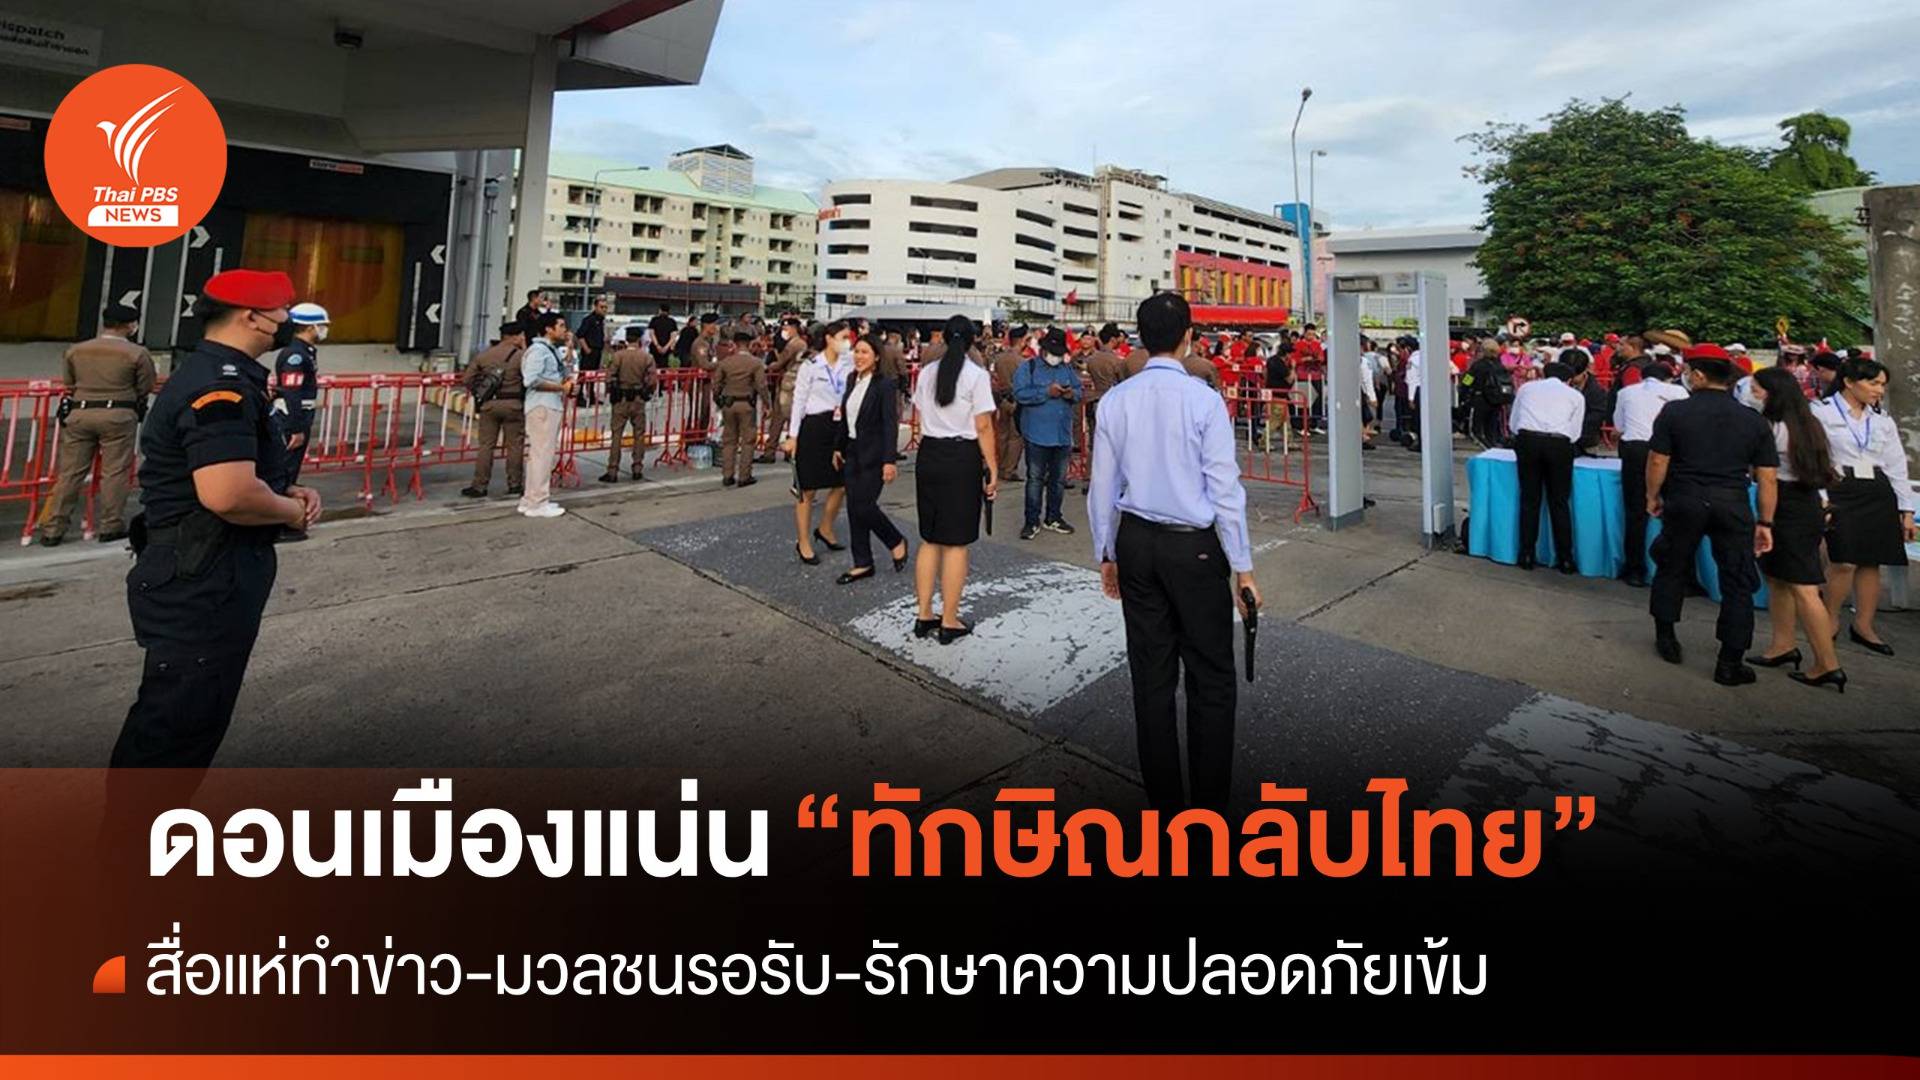 ทักษิณกลับไทย  : ดอนเมืองแน่น! "ทักษิณกลับไทย" มวลชนรอรับ-รักษาความปลอดภัยเข้ม